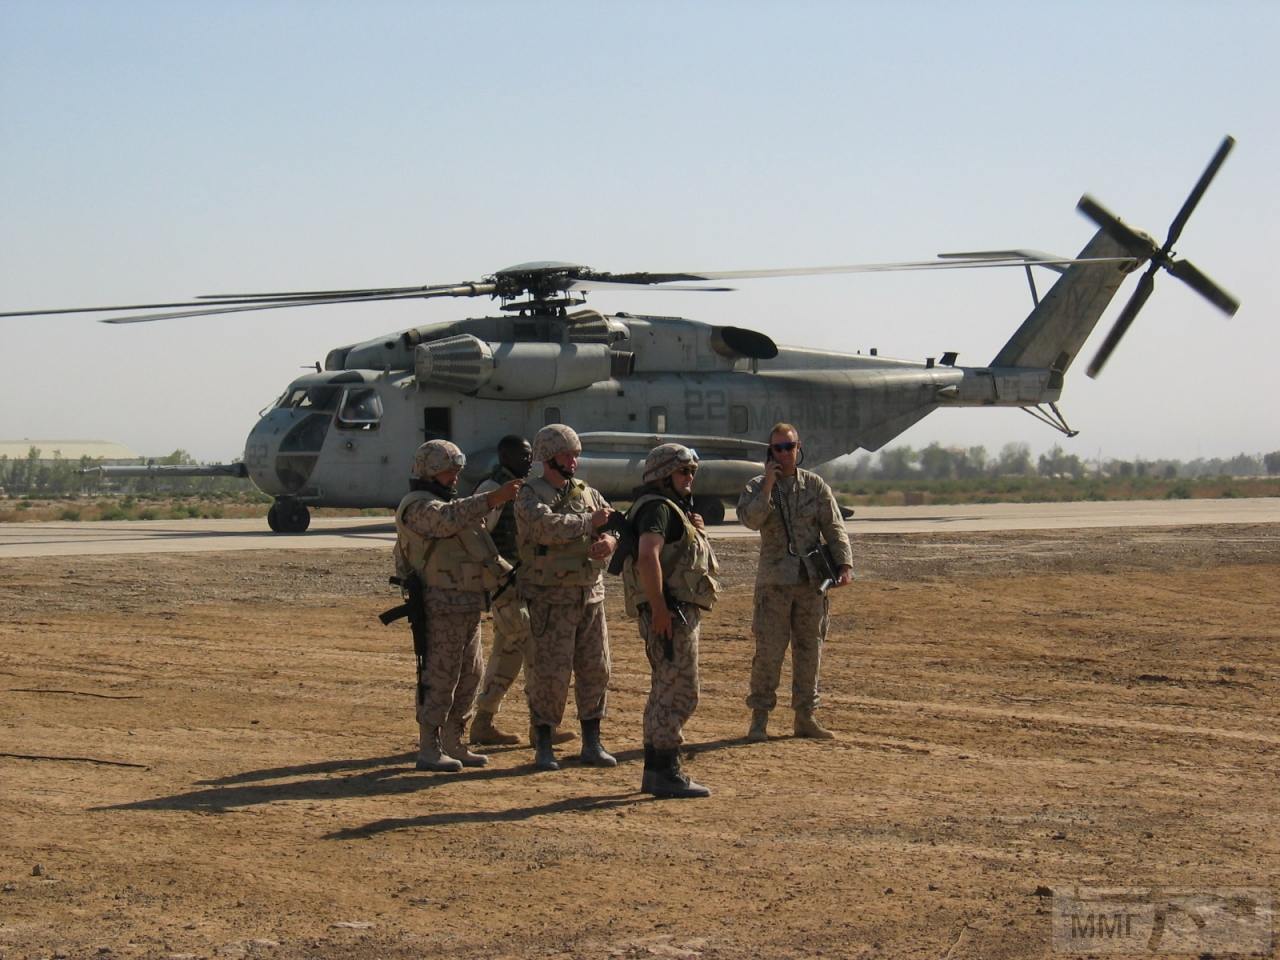 31409 - Участие ВСУ в миротворческой миссии в Ираке 2003-2008г.г.